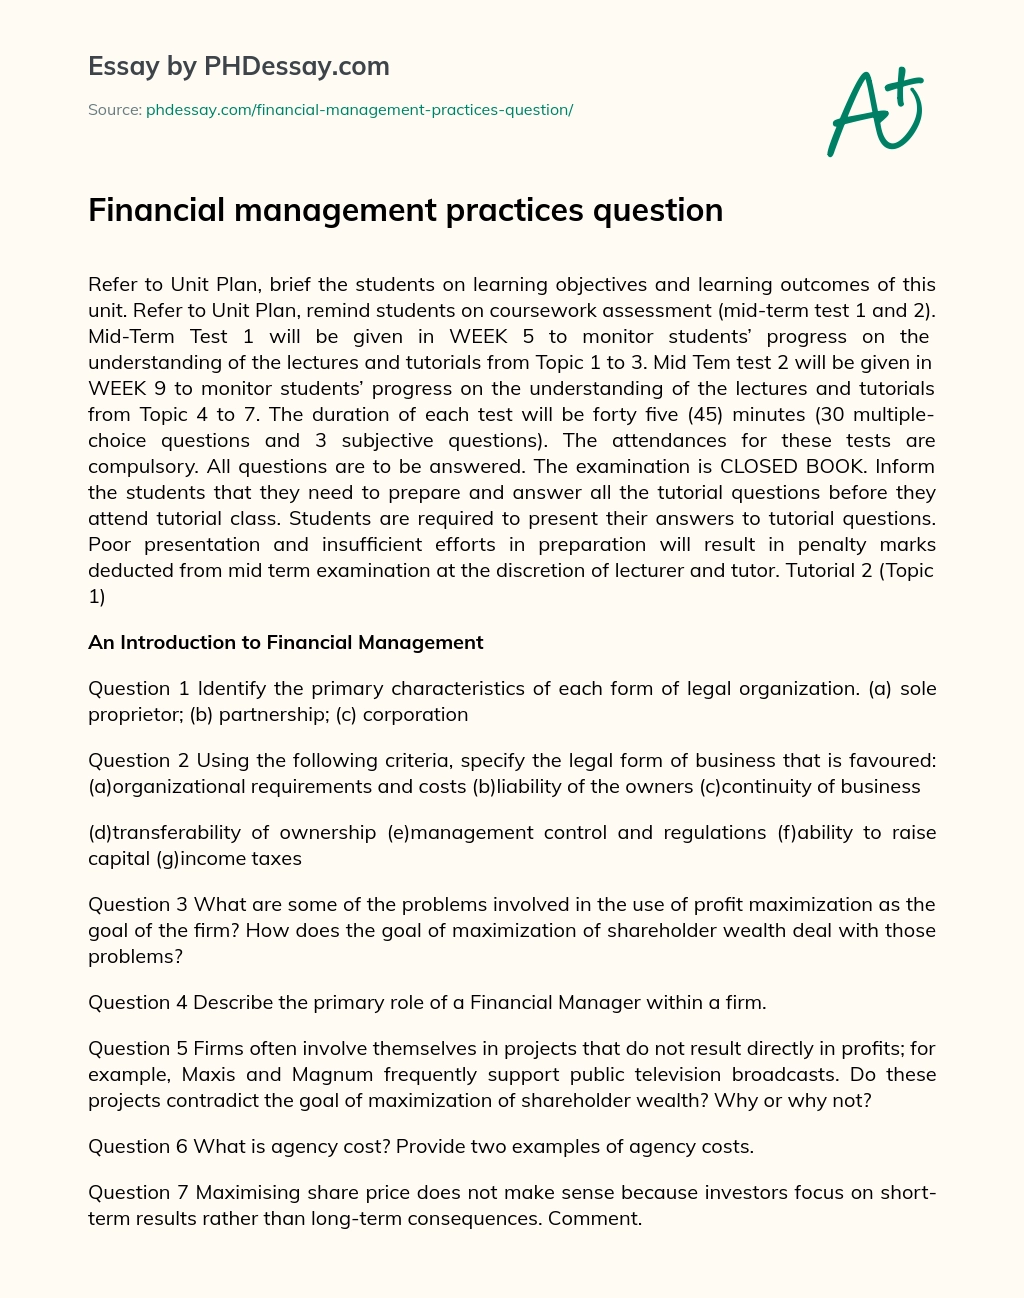 Financial management practices question essay